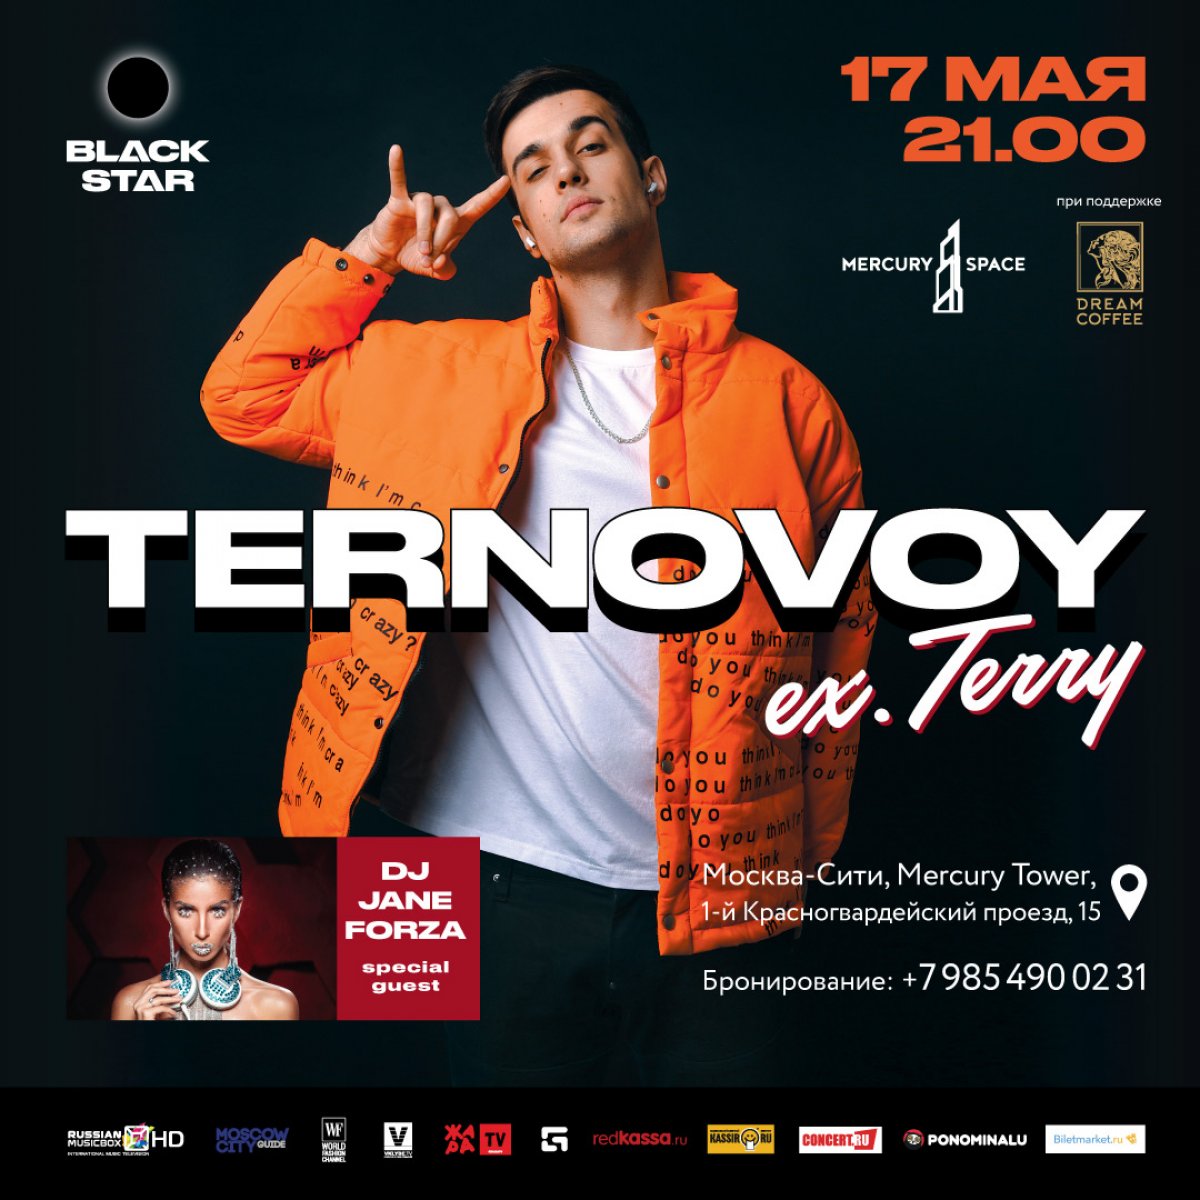 В пятницу, 17 мая в 21:00 на концертной площадке Mercury Space в Москва-Сити с панорамным видом на город состоится концерт TERNOVOY (ex. Terry) — яркого певца из Black Star и победителя шоу «Песни» на ТНТ!